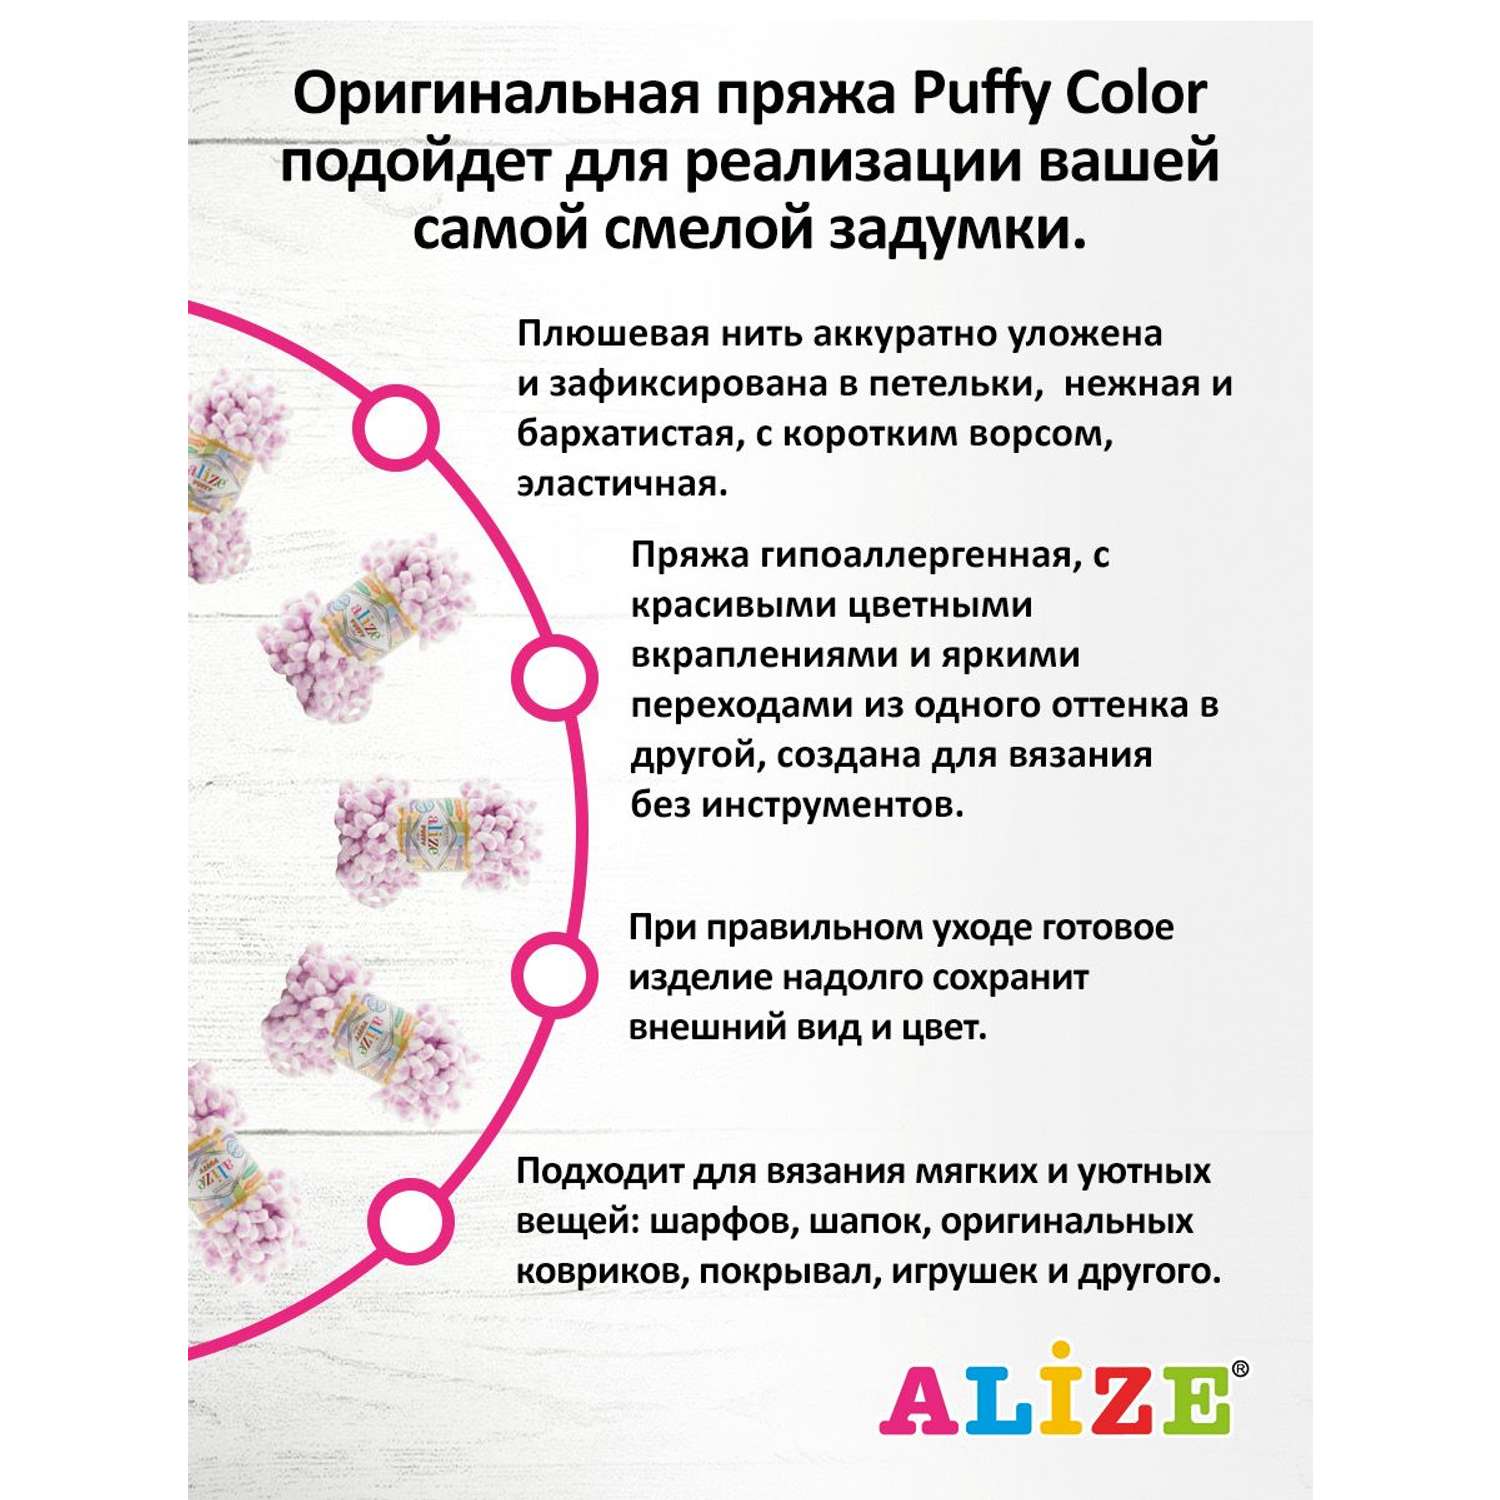 Пряжа Alize фантазийная для вязания игрушек Puffy Color 100 гр 9 м 5 мотков 6458 секционный - фото 4